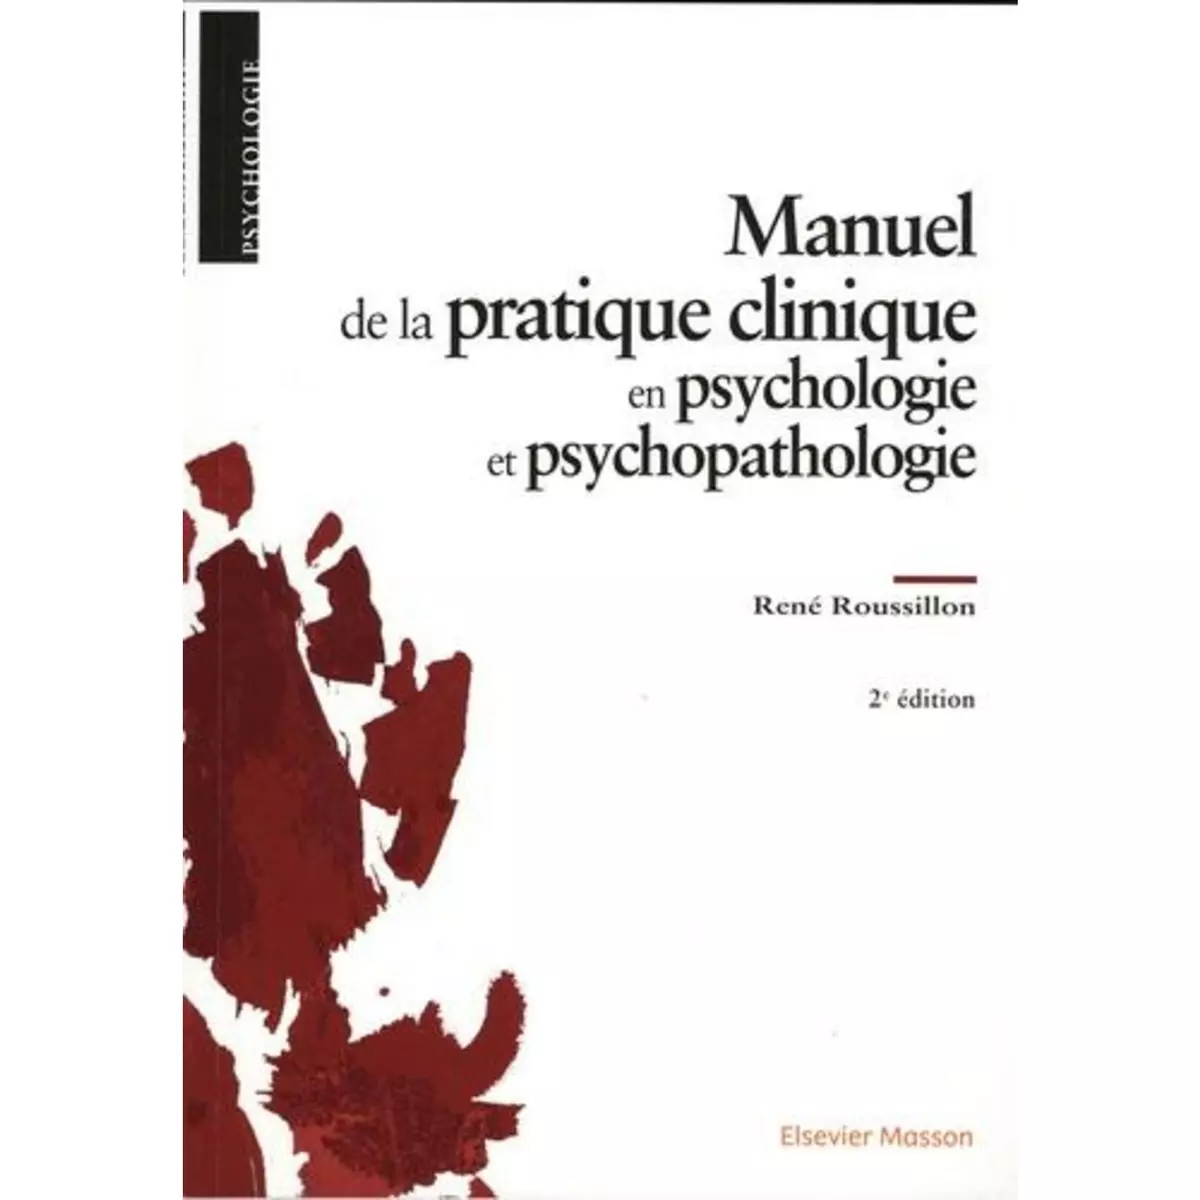  MANUEL DE LA PRATIQUE CLINIQUE EN PSYCHOLOGIE ET PSYCHOPATHOLOGIE. 2E EDITION, Roussillon René